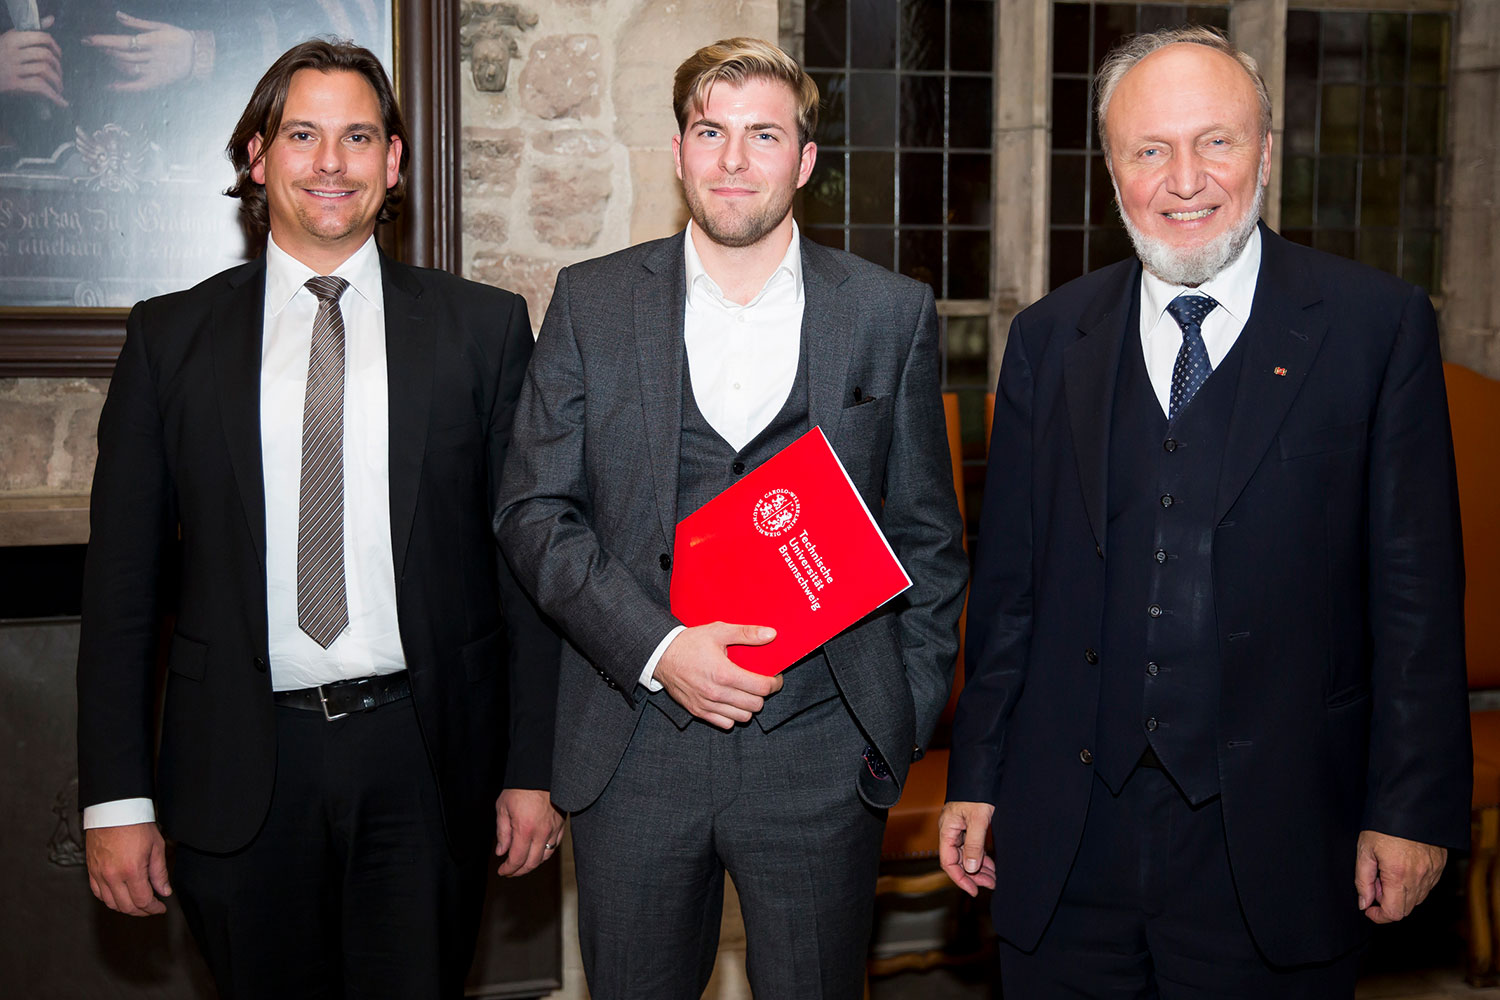 Gruppenfoto von Prof. Dr. Christian Leßmann, Bastian Stahl und Prof. Dr. Dr. h.c. mult. Hans-Werner Sinn.